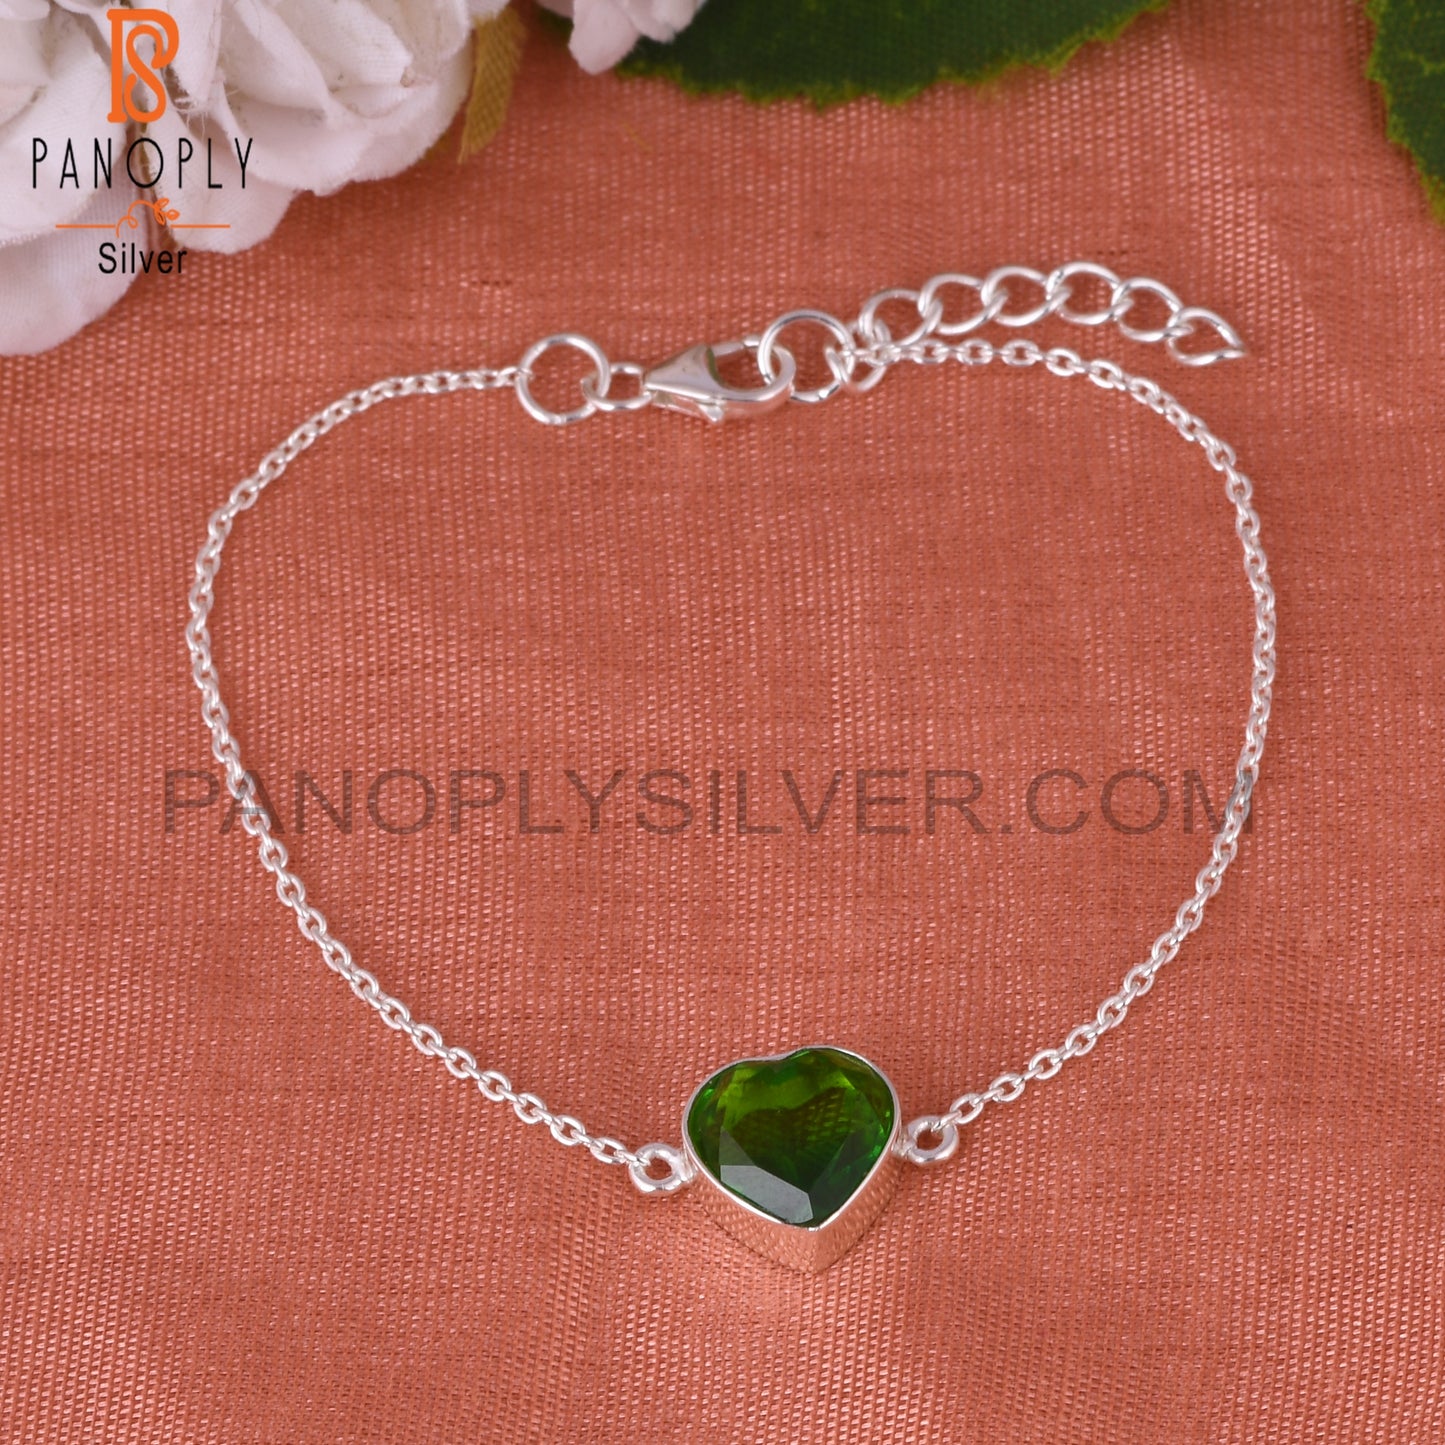 Bio Chrome Diopside Doublet Quartz Heart Silver Bracelet